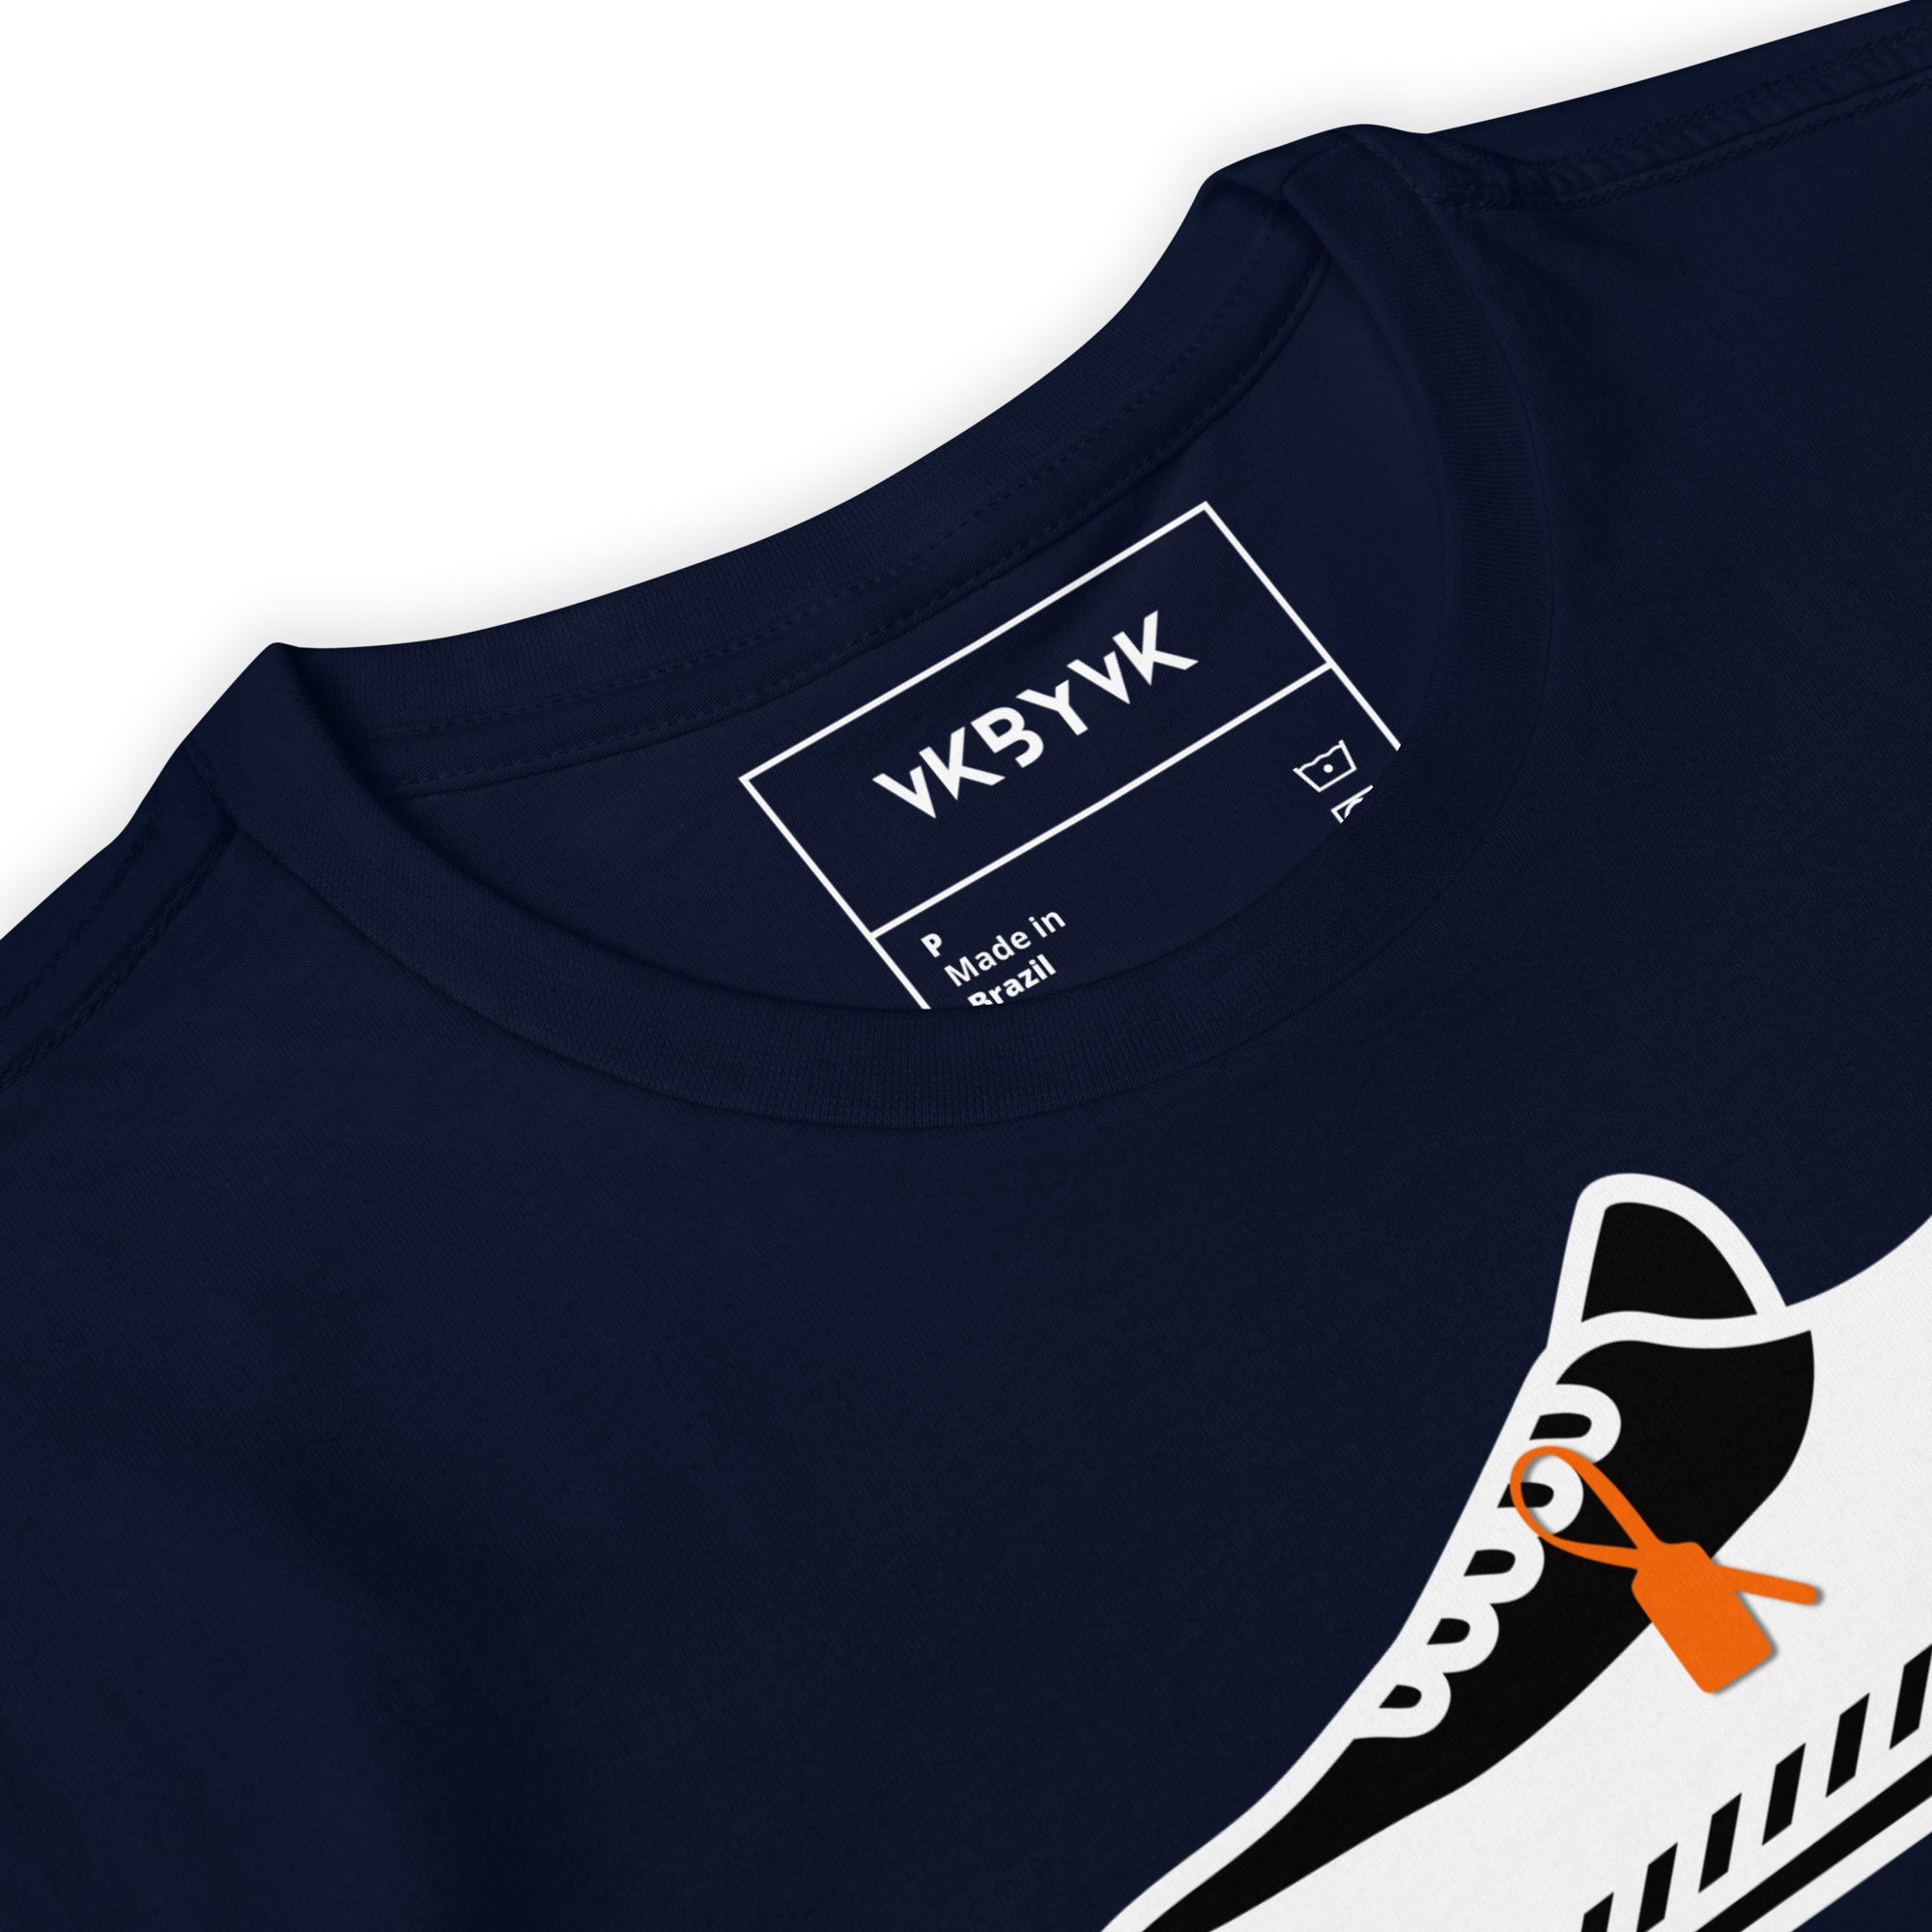 Camiseta Sneakers VK by VK